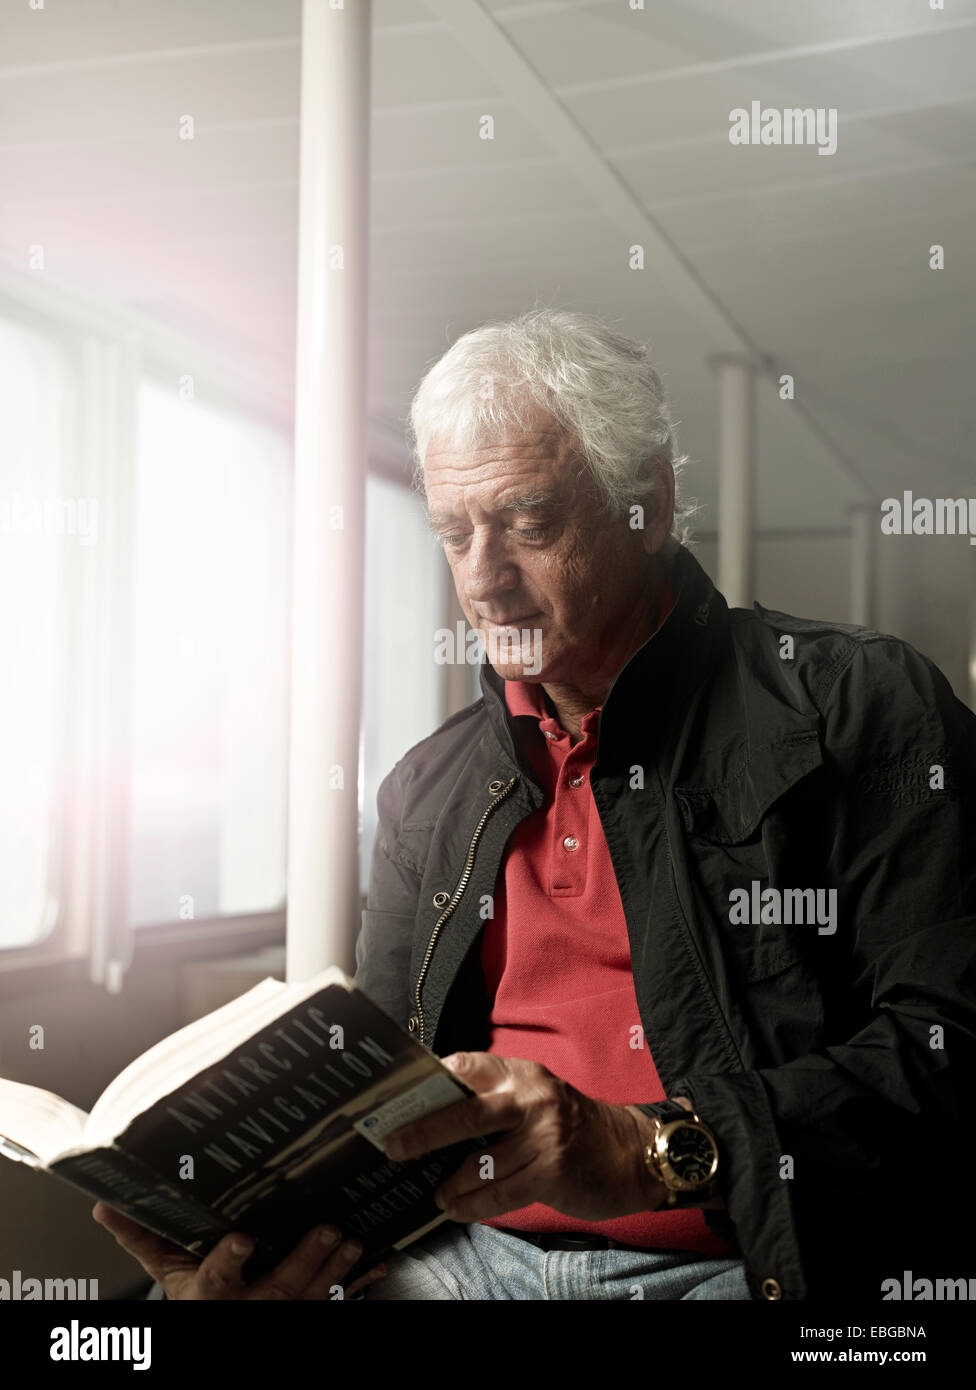 Homme âgé de lire un livre sur un navire, l'île de Spitsbergen, Svalbard, archipel de Svalbard et Jan Mayen (Norvège) Banque D'Images